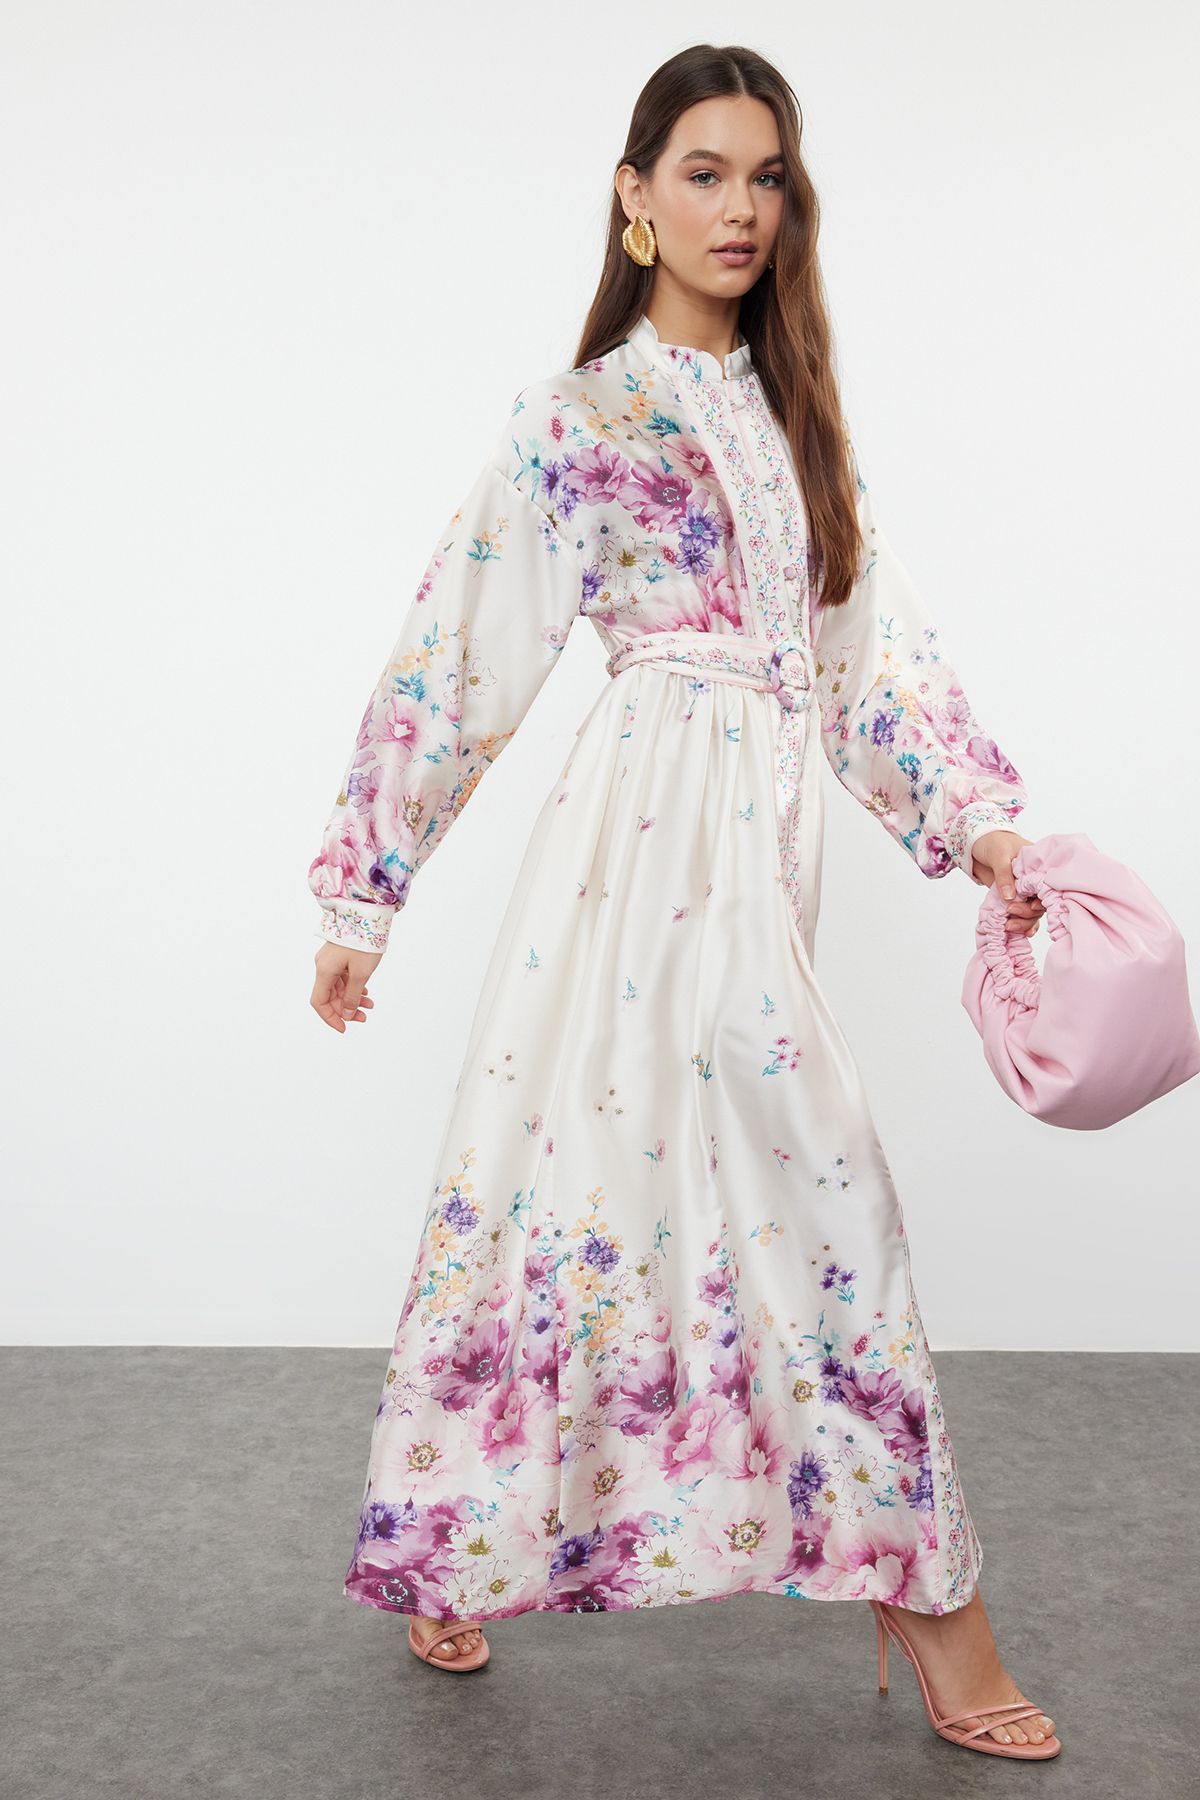 Trendyol Ecru Belted Woven Floral Patterned Dress